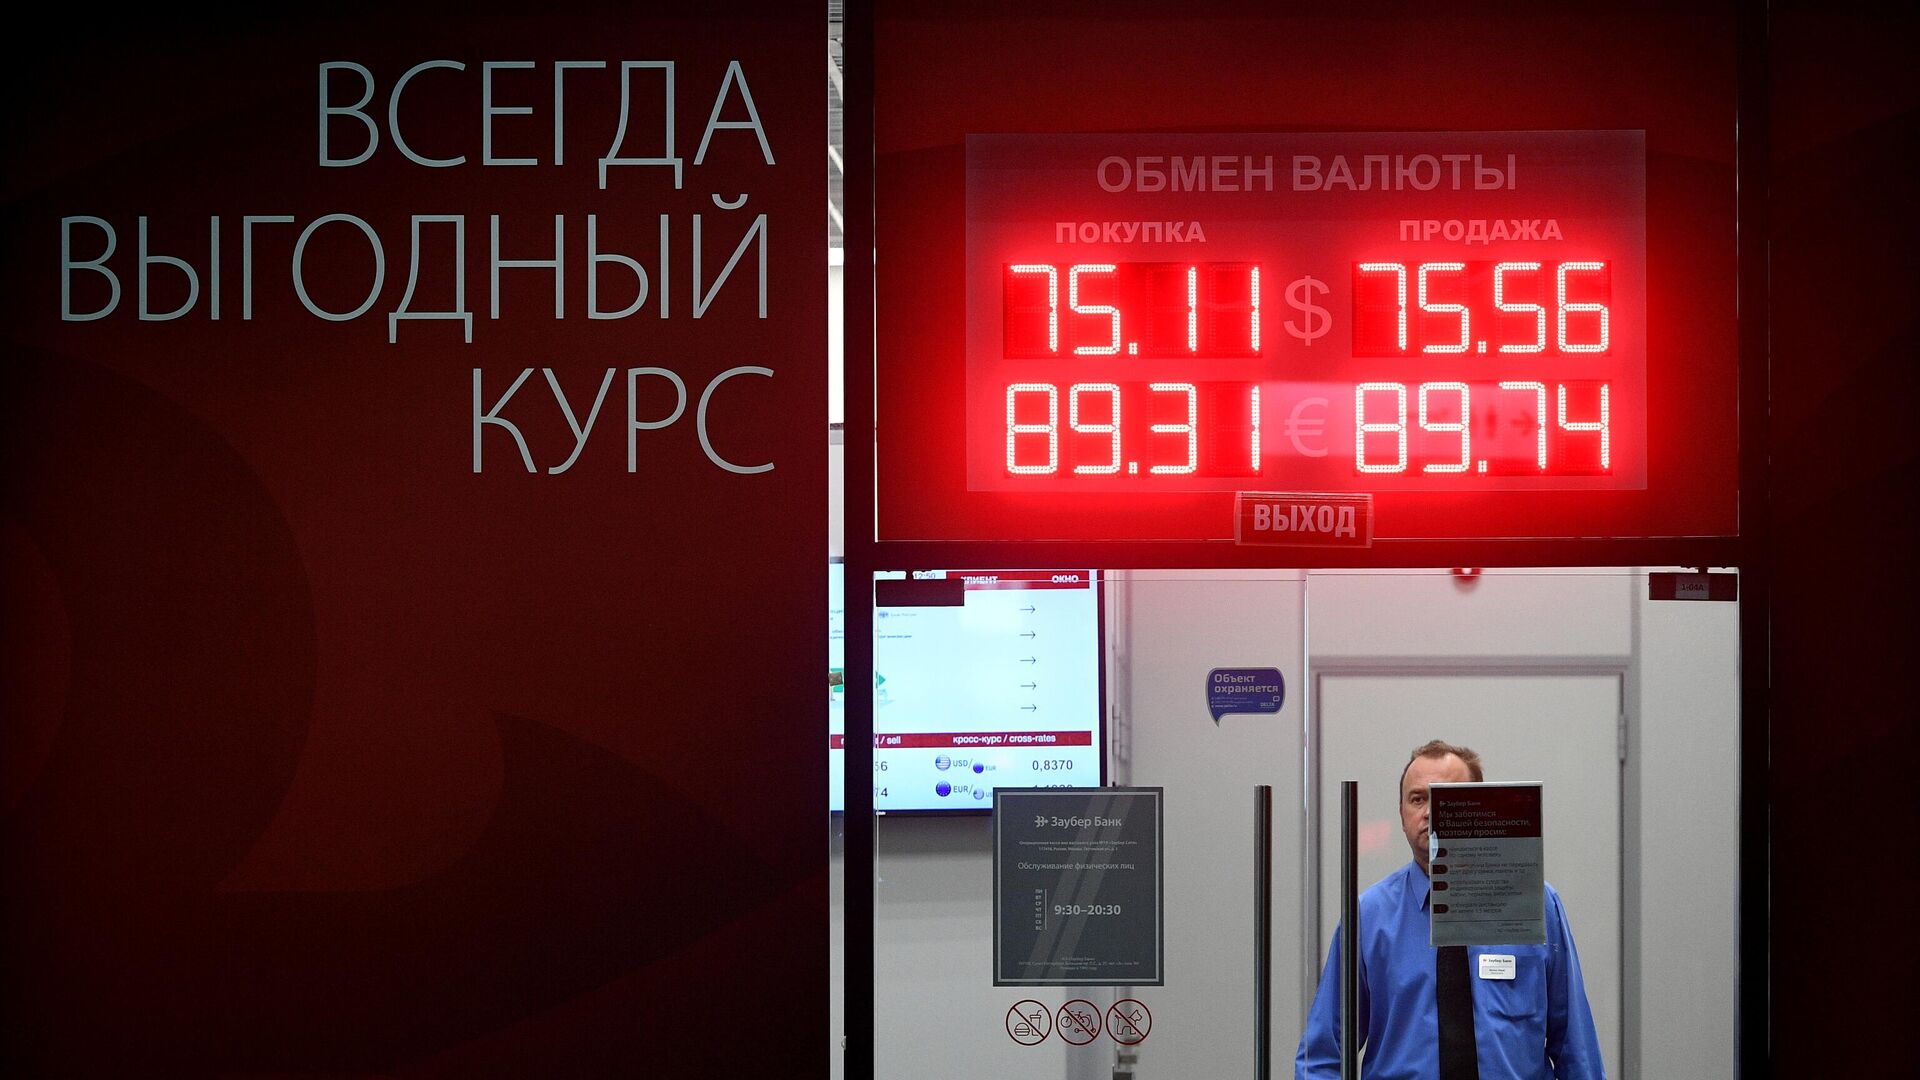 Обмен валют в москве в воскресенье обмен биткоин в банке рбк